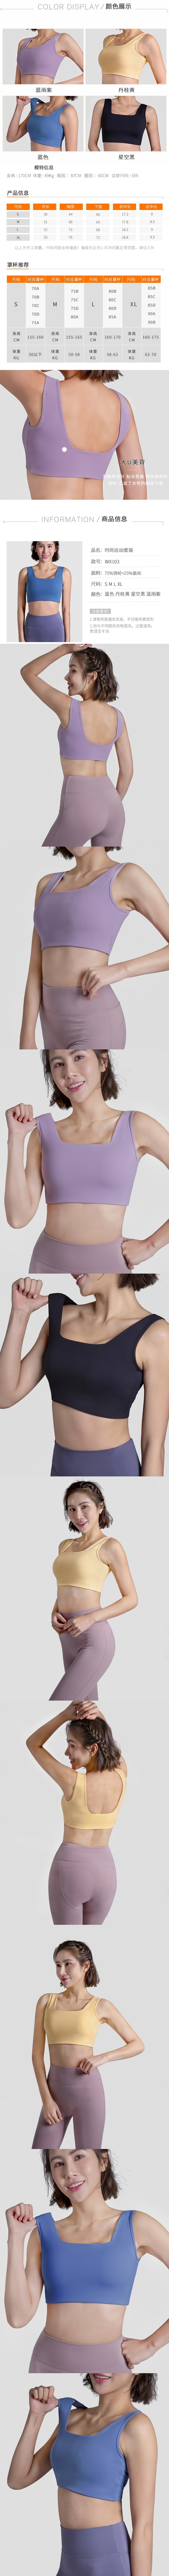 玩美衣櫃防震高強度健身瑜珈運動內衣S-XL(共4色)